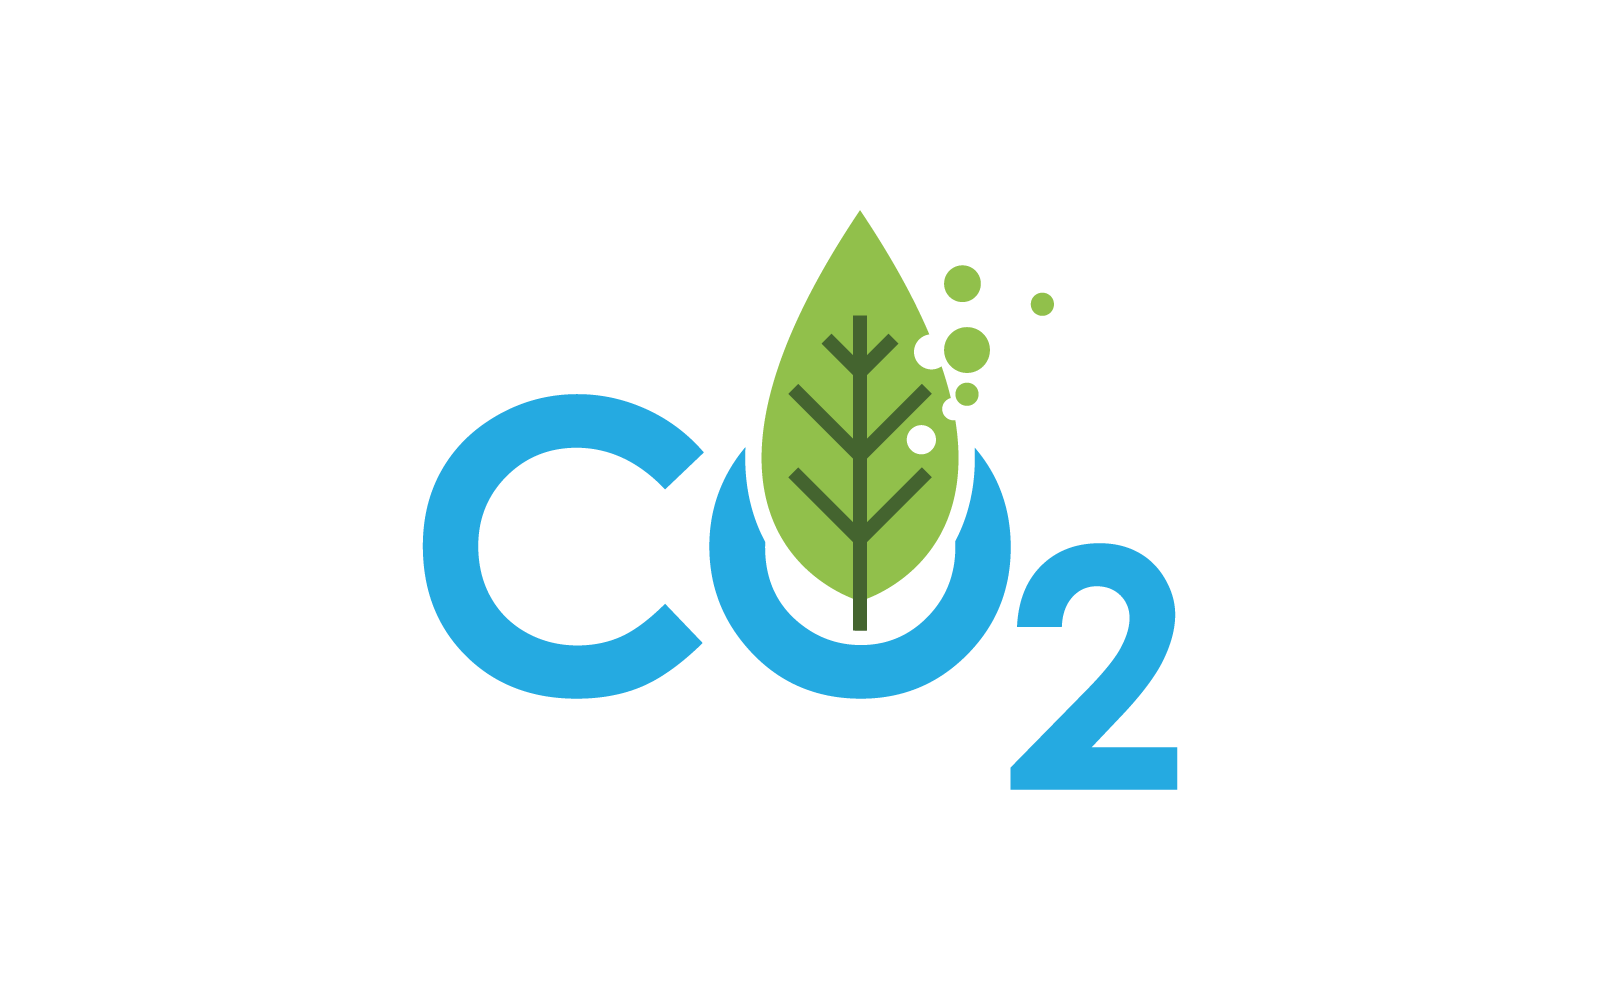 Co2 Carbon dioxide logo icon vector design